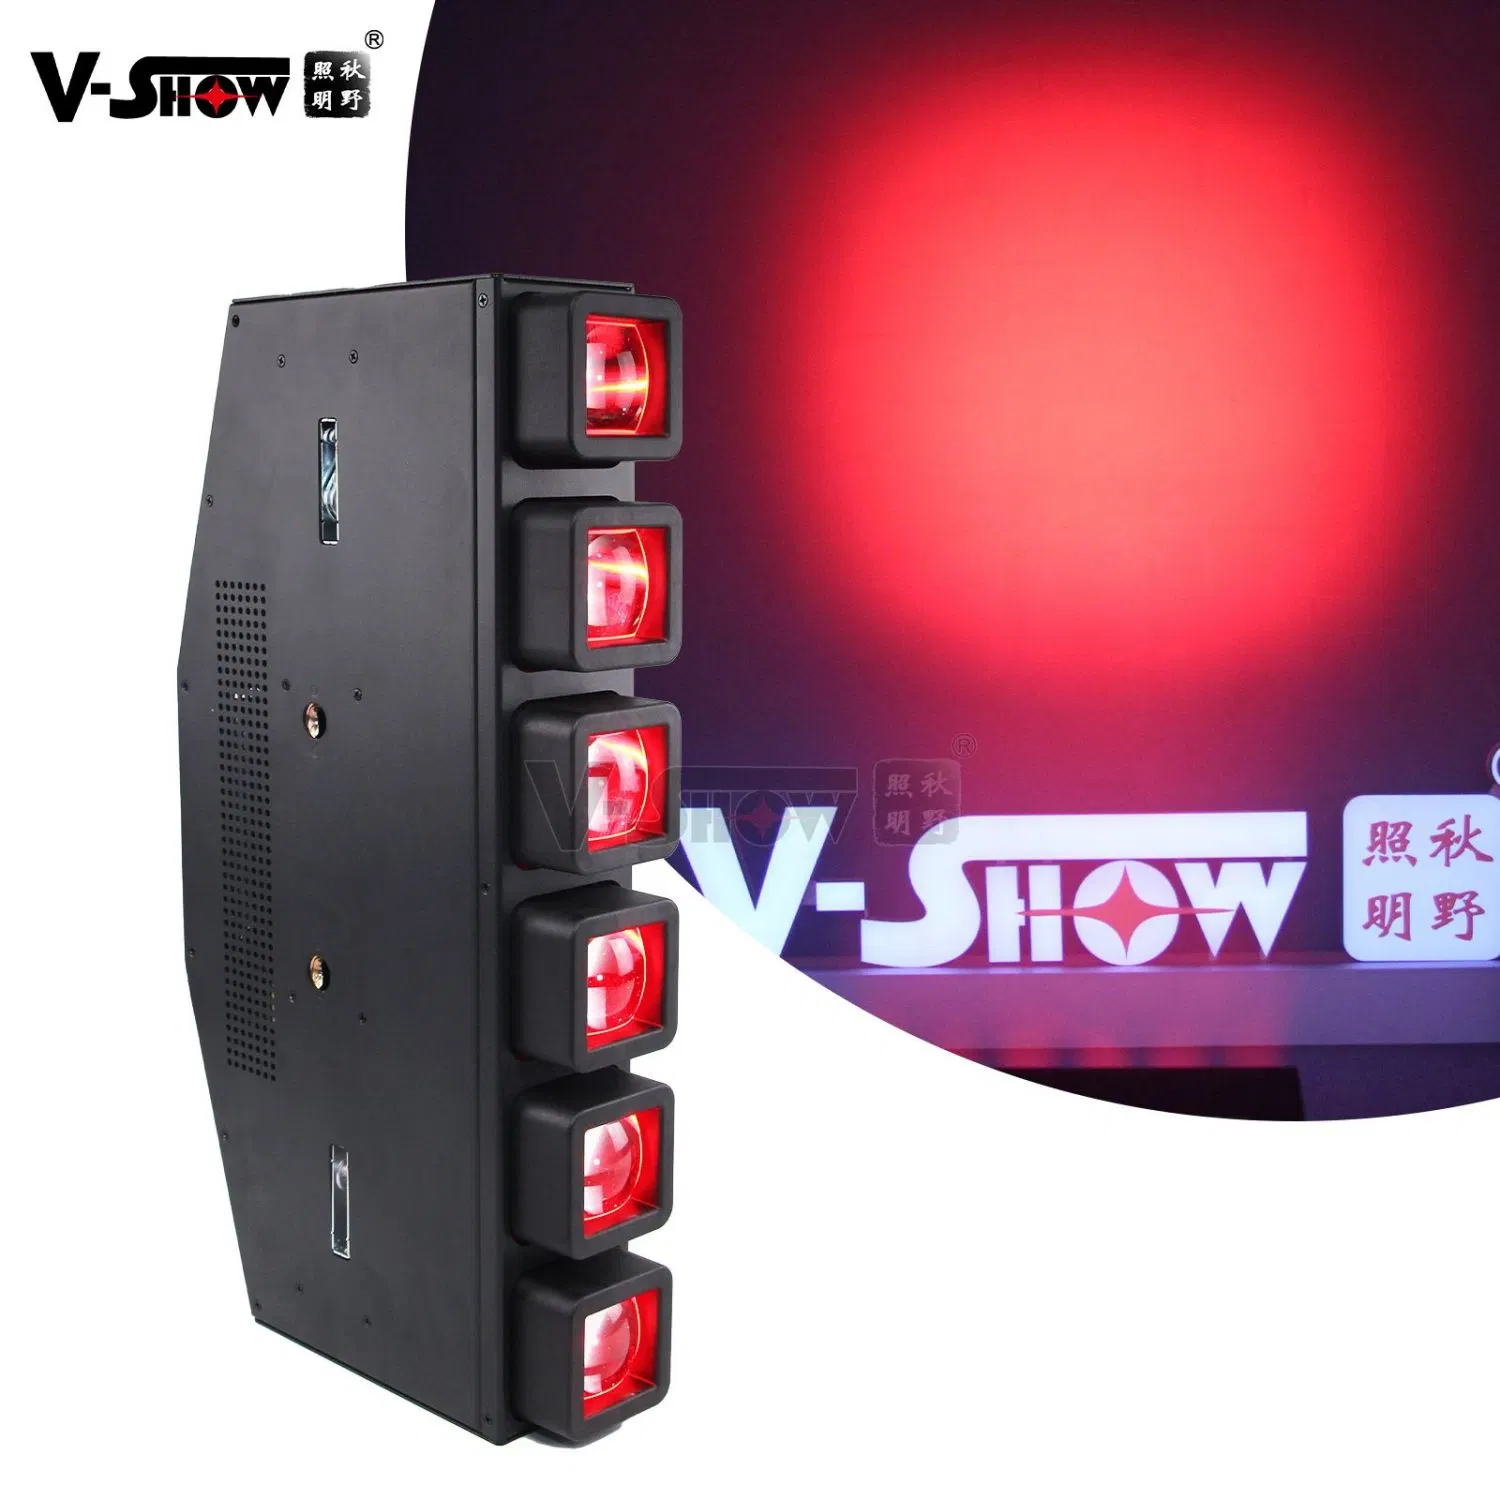 V-Show Dynamic Wall LED Beam Wash Zoom Splash Bar Lighting (إضاءة قضيب رش المياه) 6*40 واط مصابيح أحجية في القضيب 6*40 واط RGBW 4in1 LED تثبيت حزمة الأشعة ضوء الرأس المتحرك لغسل الزووم